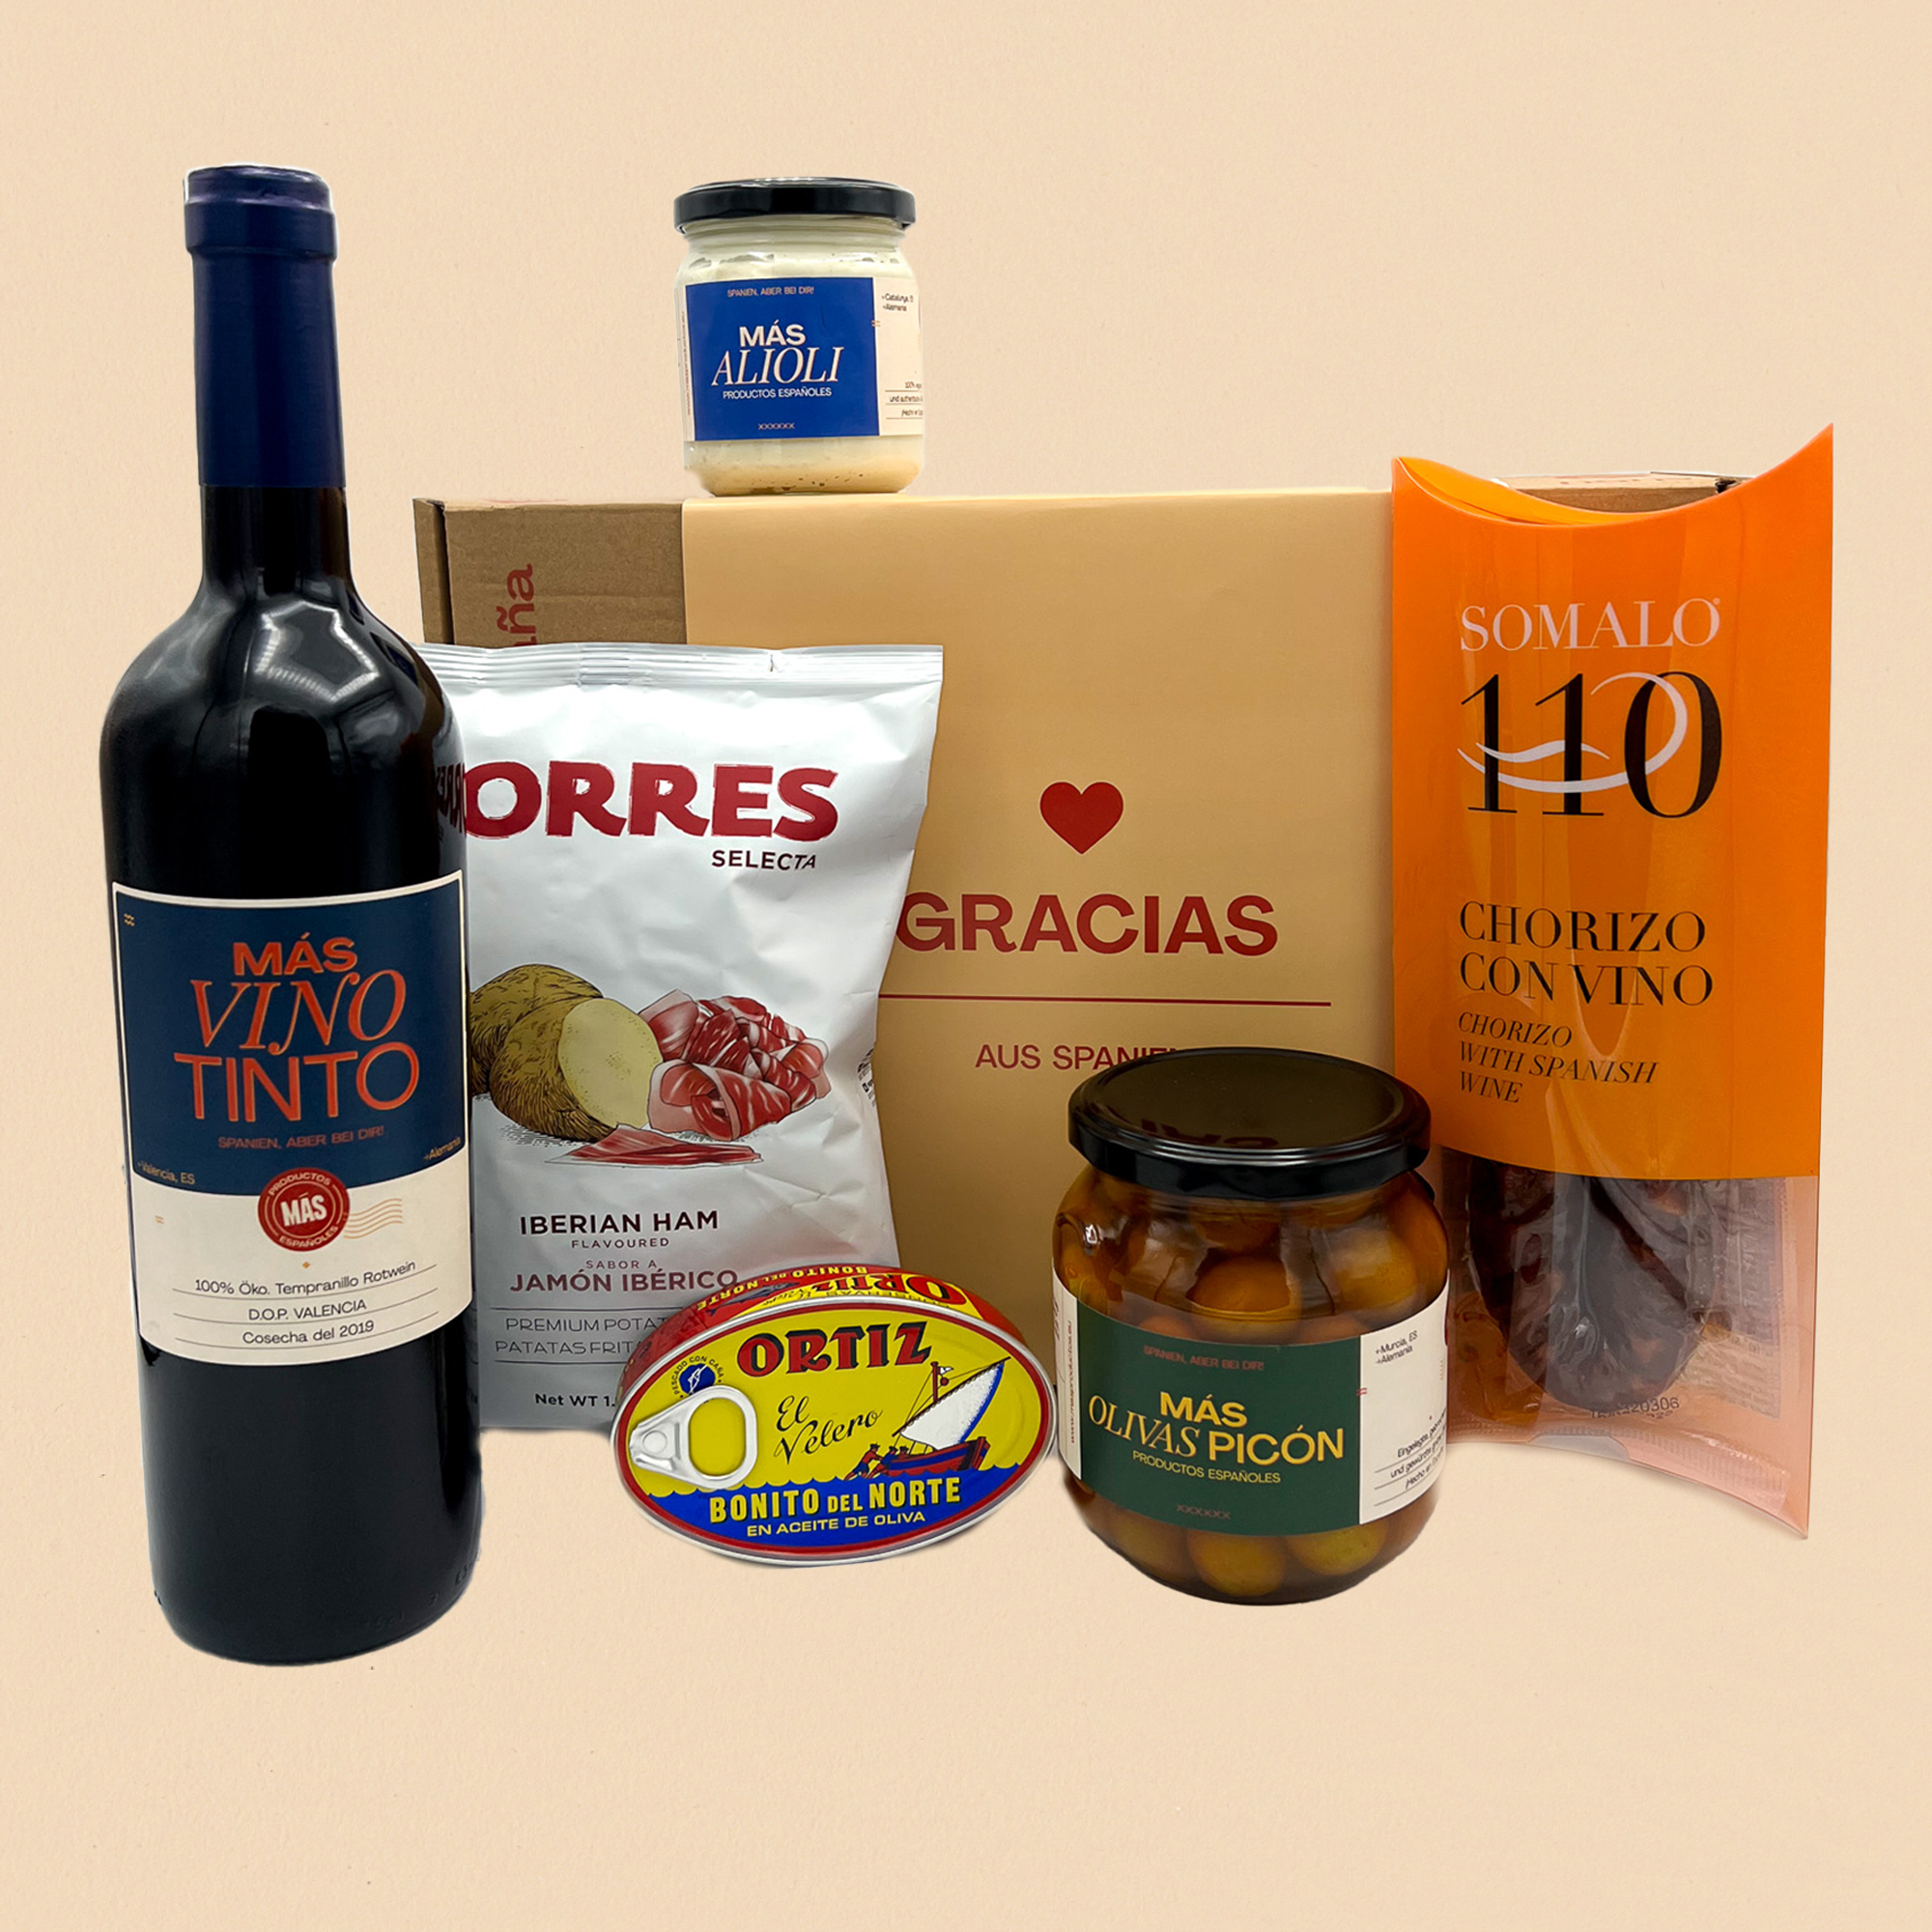 Gracias spanische Geschenkbox - Spanische Tapas Spezialitäten